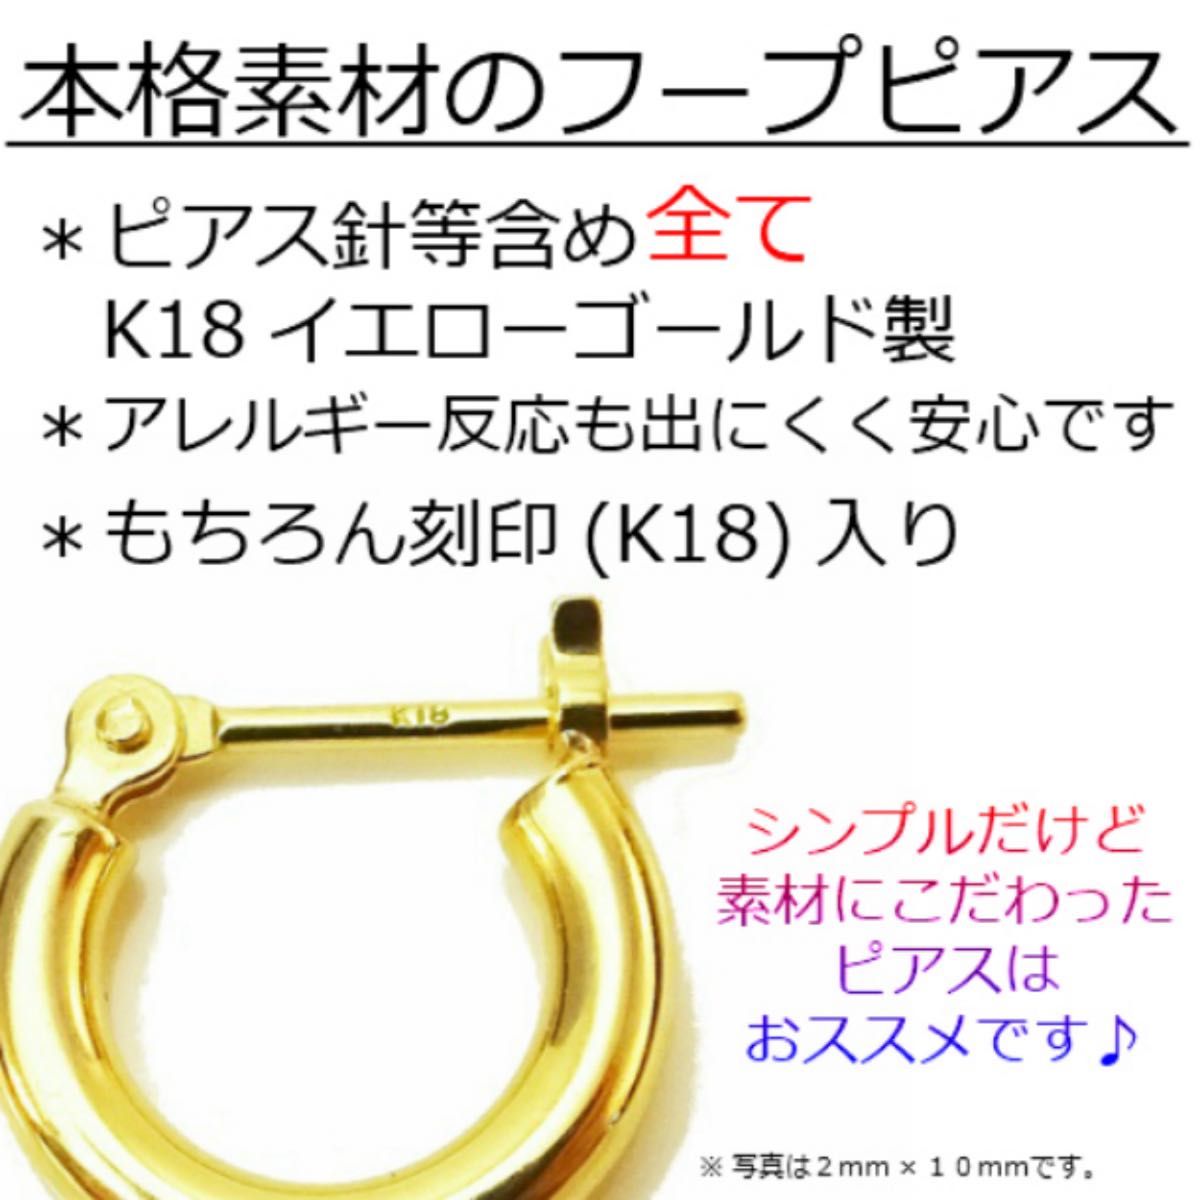 新品 K18 フープピアス 2×25㎜ 上質 日本製【18金・本物 刻印入り】ペア